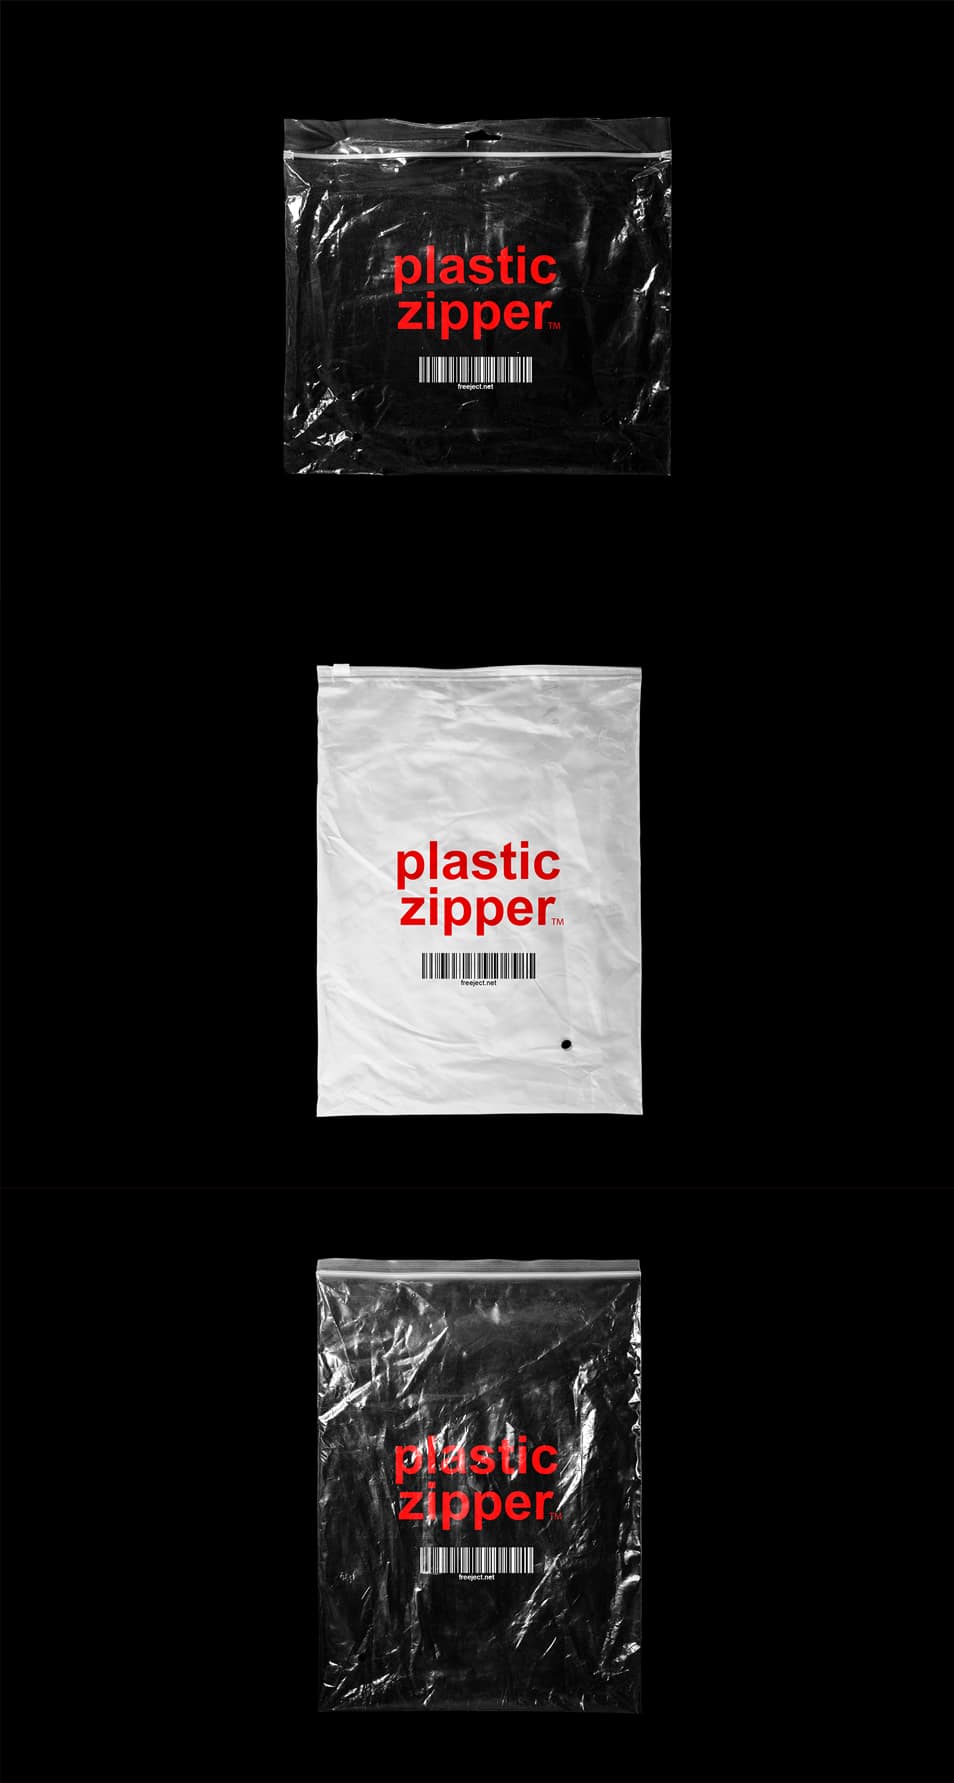 Download 3 Plastic Zipper Bag Mockup PSD » CSS Author